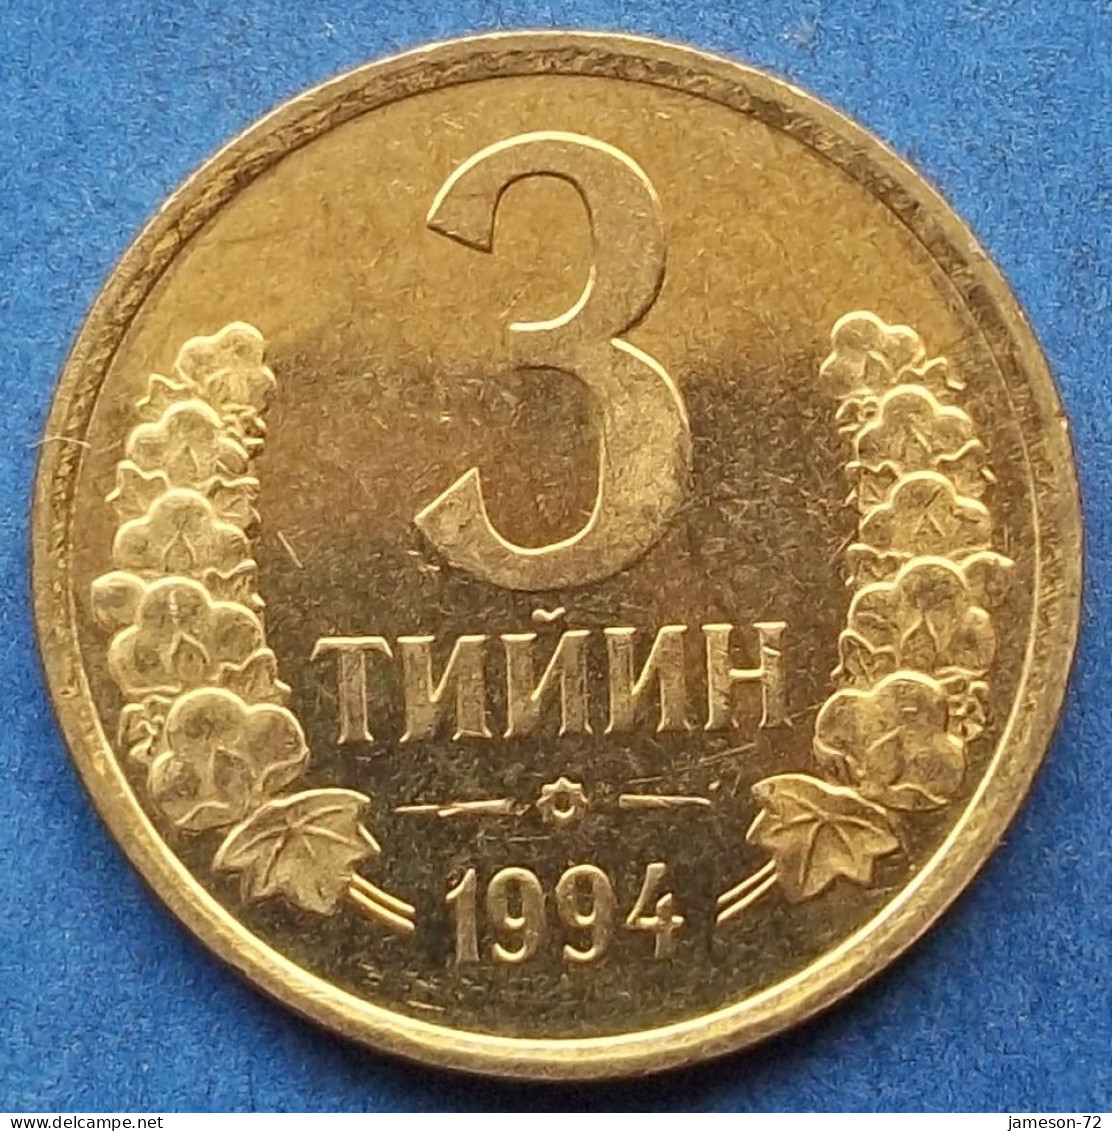 UZBEKISTAN - 3 Tiyin 1994 KM# 2 Independent Republic (1991) - Edelweiss Coins - Usbekistan